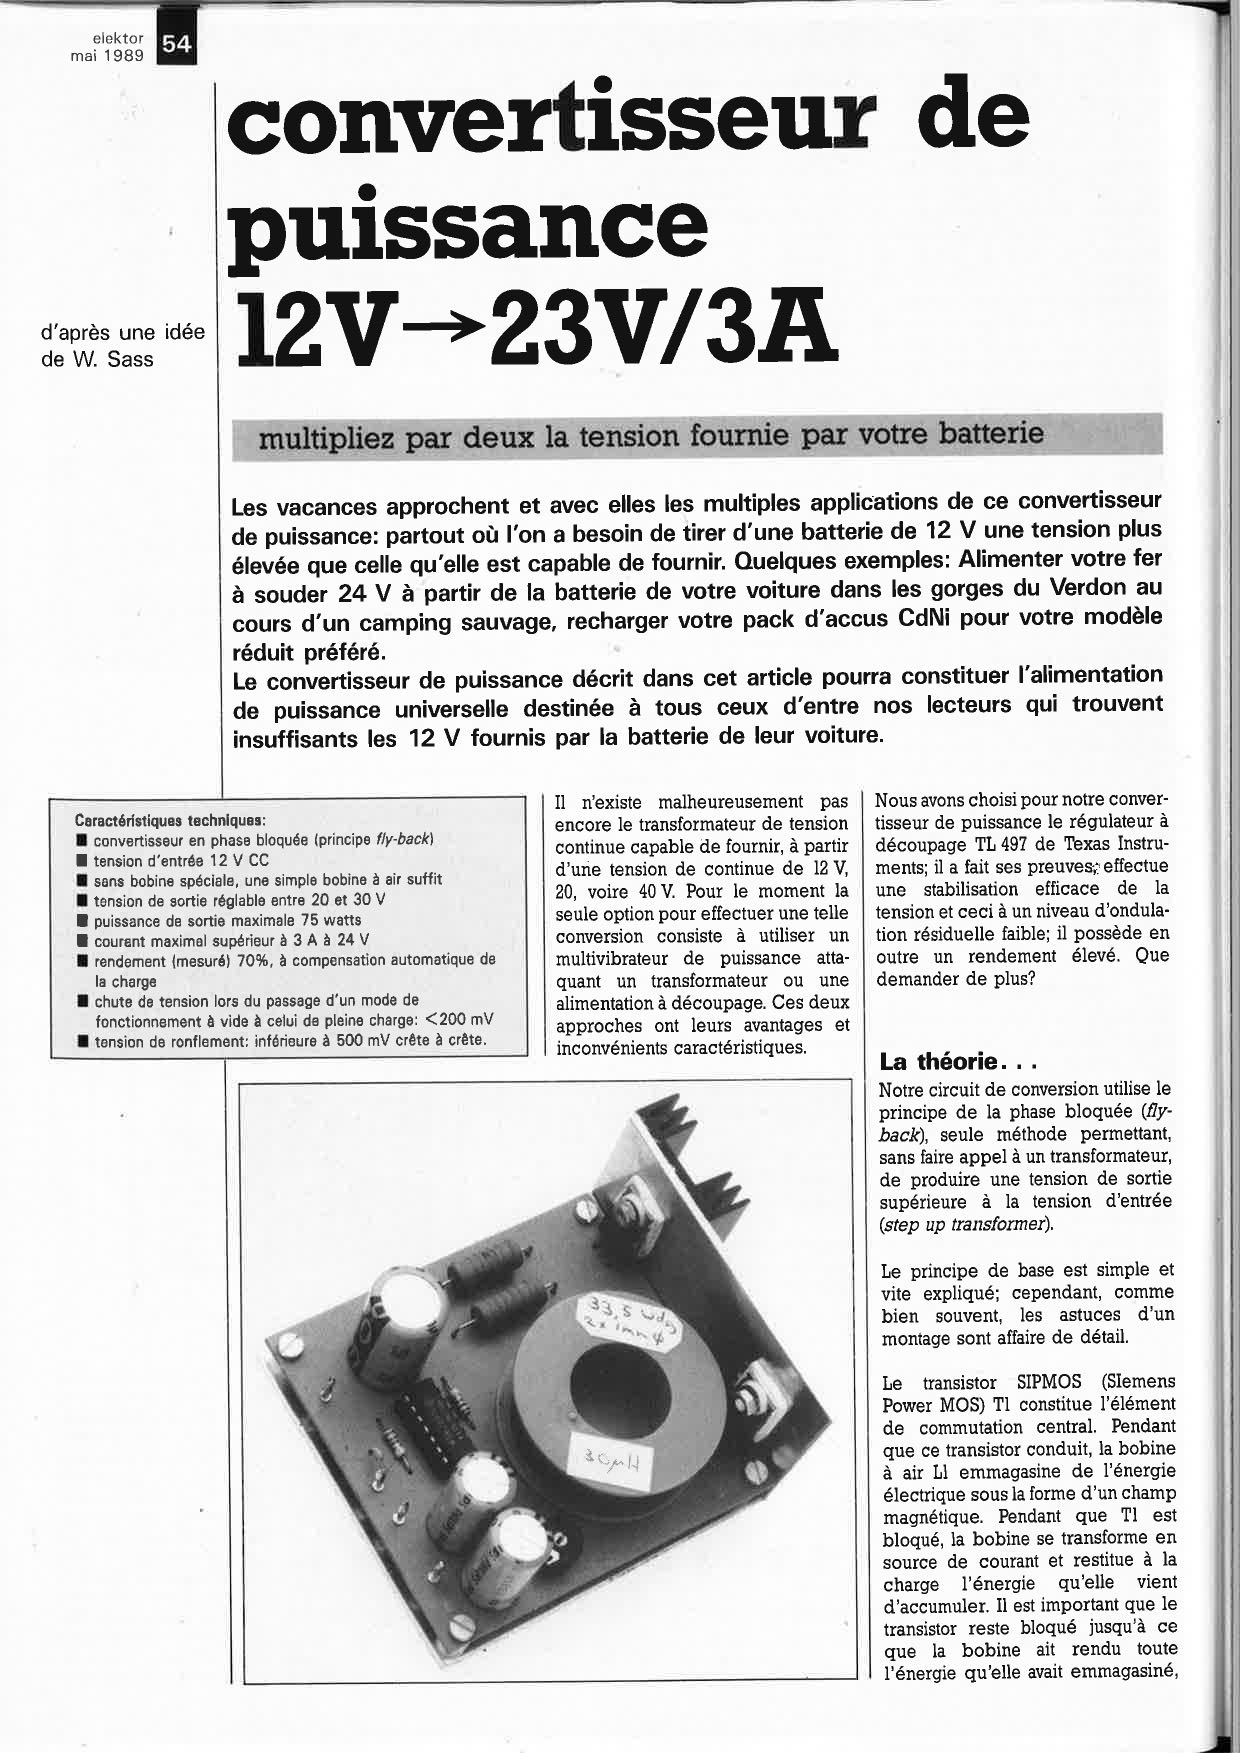 convertisseur de puissance 12V - 23V/3A